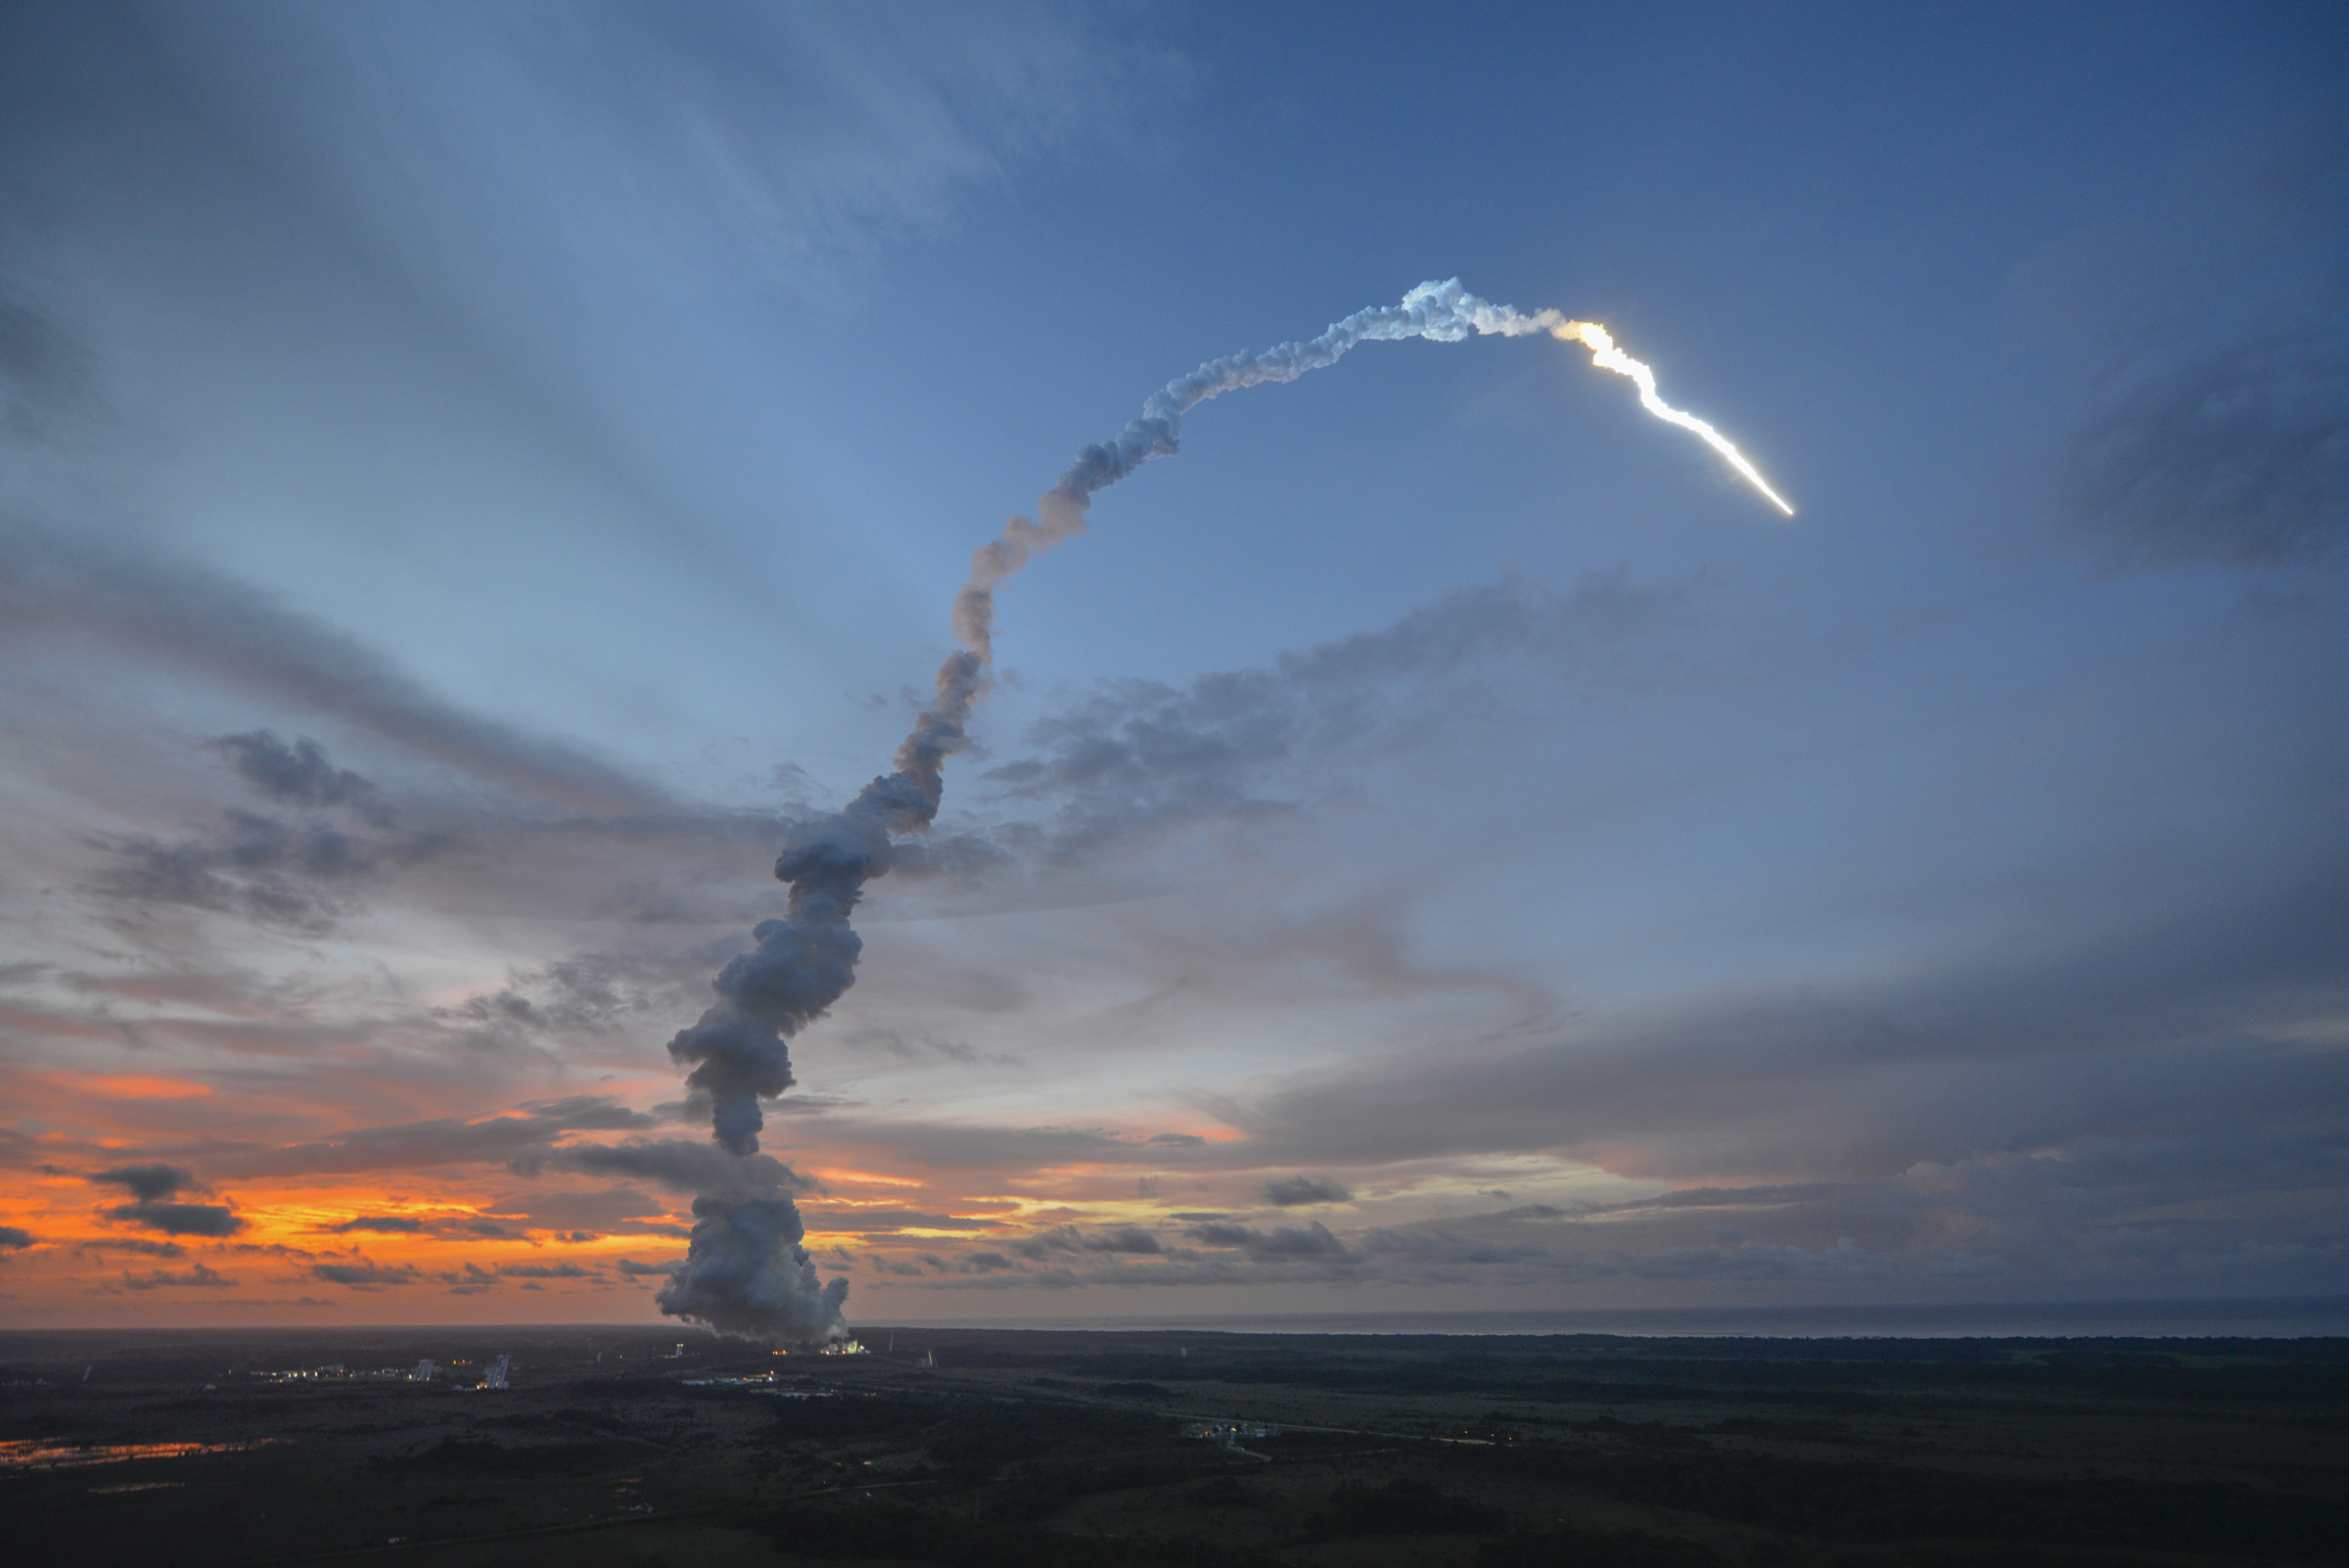 Le lancement ce soir, depuis l’Ensemble de lancement Ariane n°3 (ELA 3) à Kourou, sera le&nbsp;215e pour&nbsp;une Ariane, toutes familles confondues, et&nbsp;le 71e pour une Ariane 5. Pour le décompte de&nbsp;l'année 2013, il viendra en numéro 4&nbsp;pour une 5 ECA et en position 5 pour une&nbsp;Ariane, une 5 ES ayant lancé vers l'ISS l'ATV-4 Albert Einstein en juin dernier. © Esa, S. Corvaja